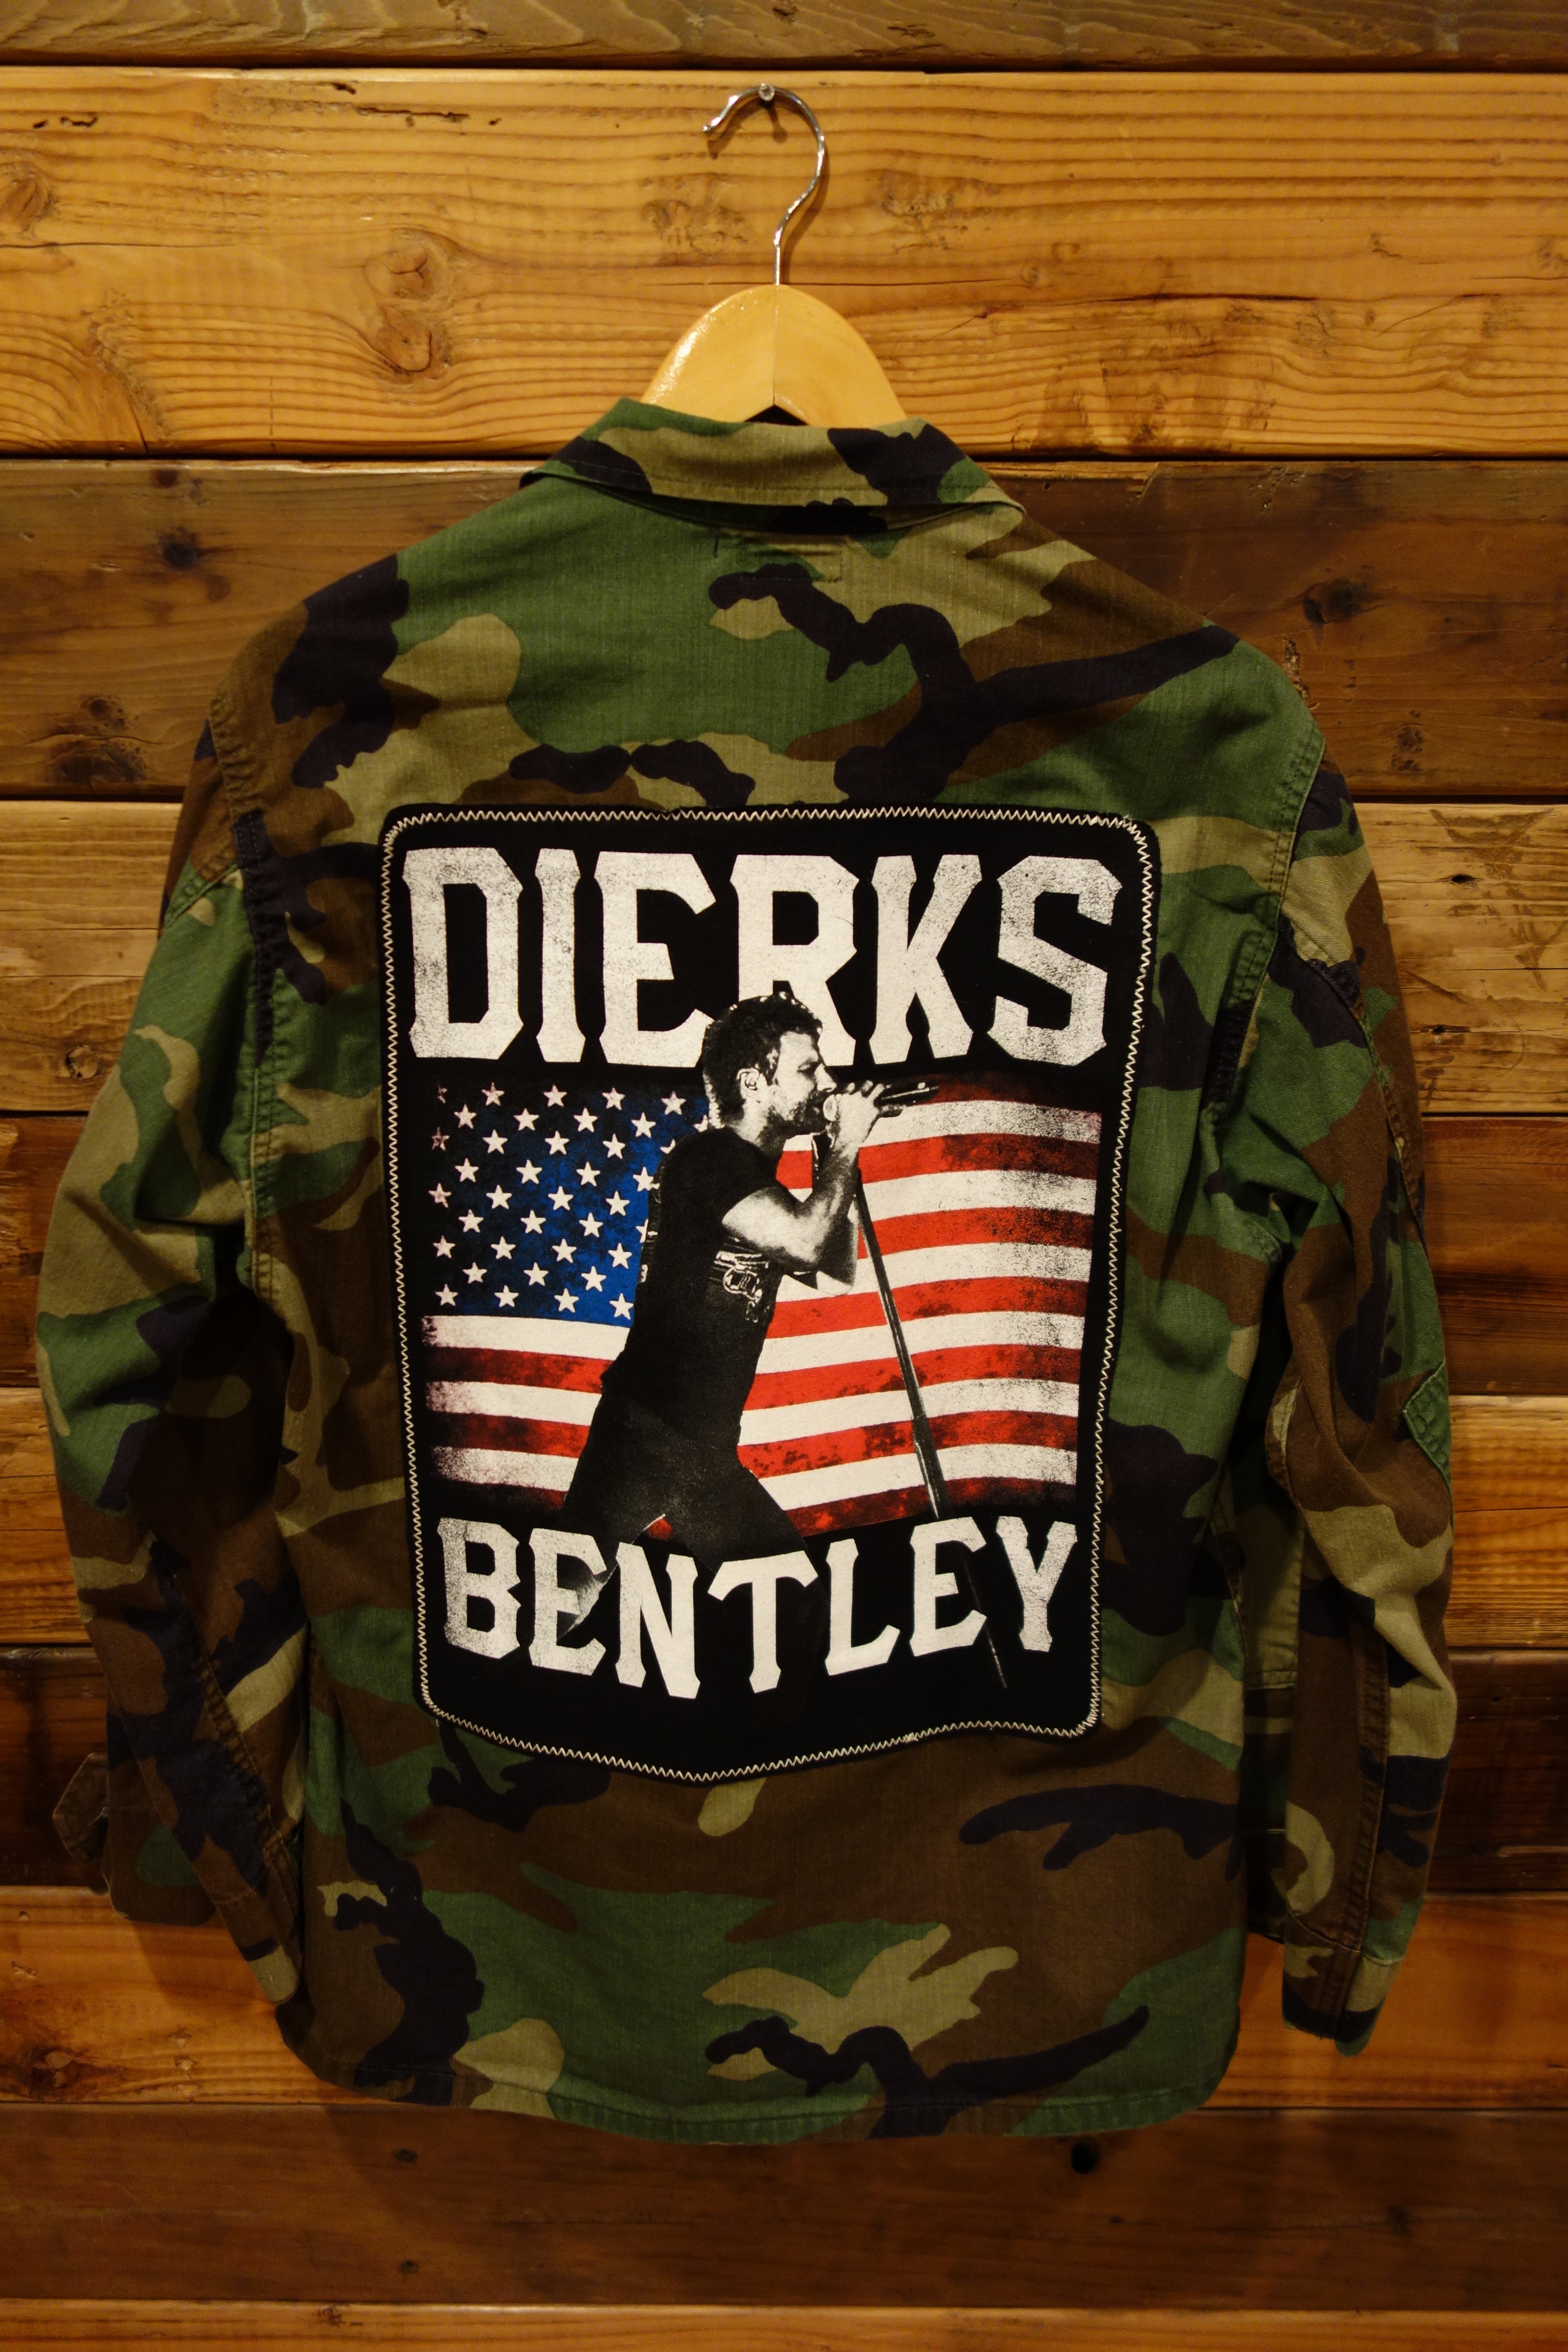 Dirks Bentley concert tee, military issued camo jacket